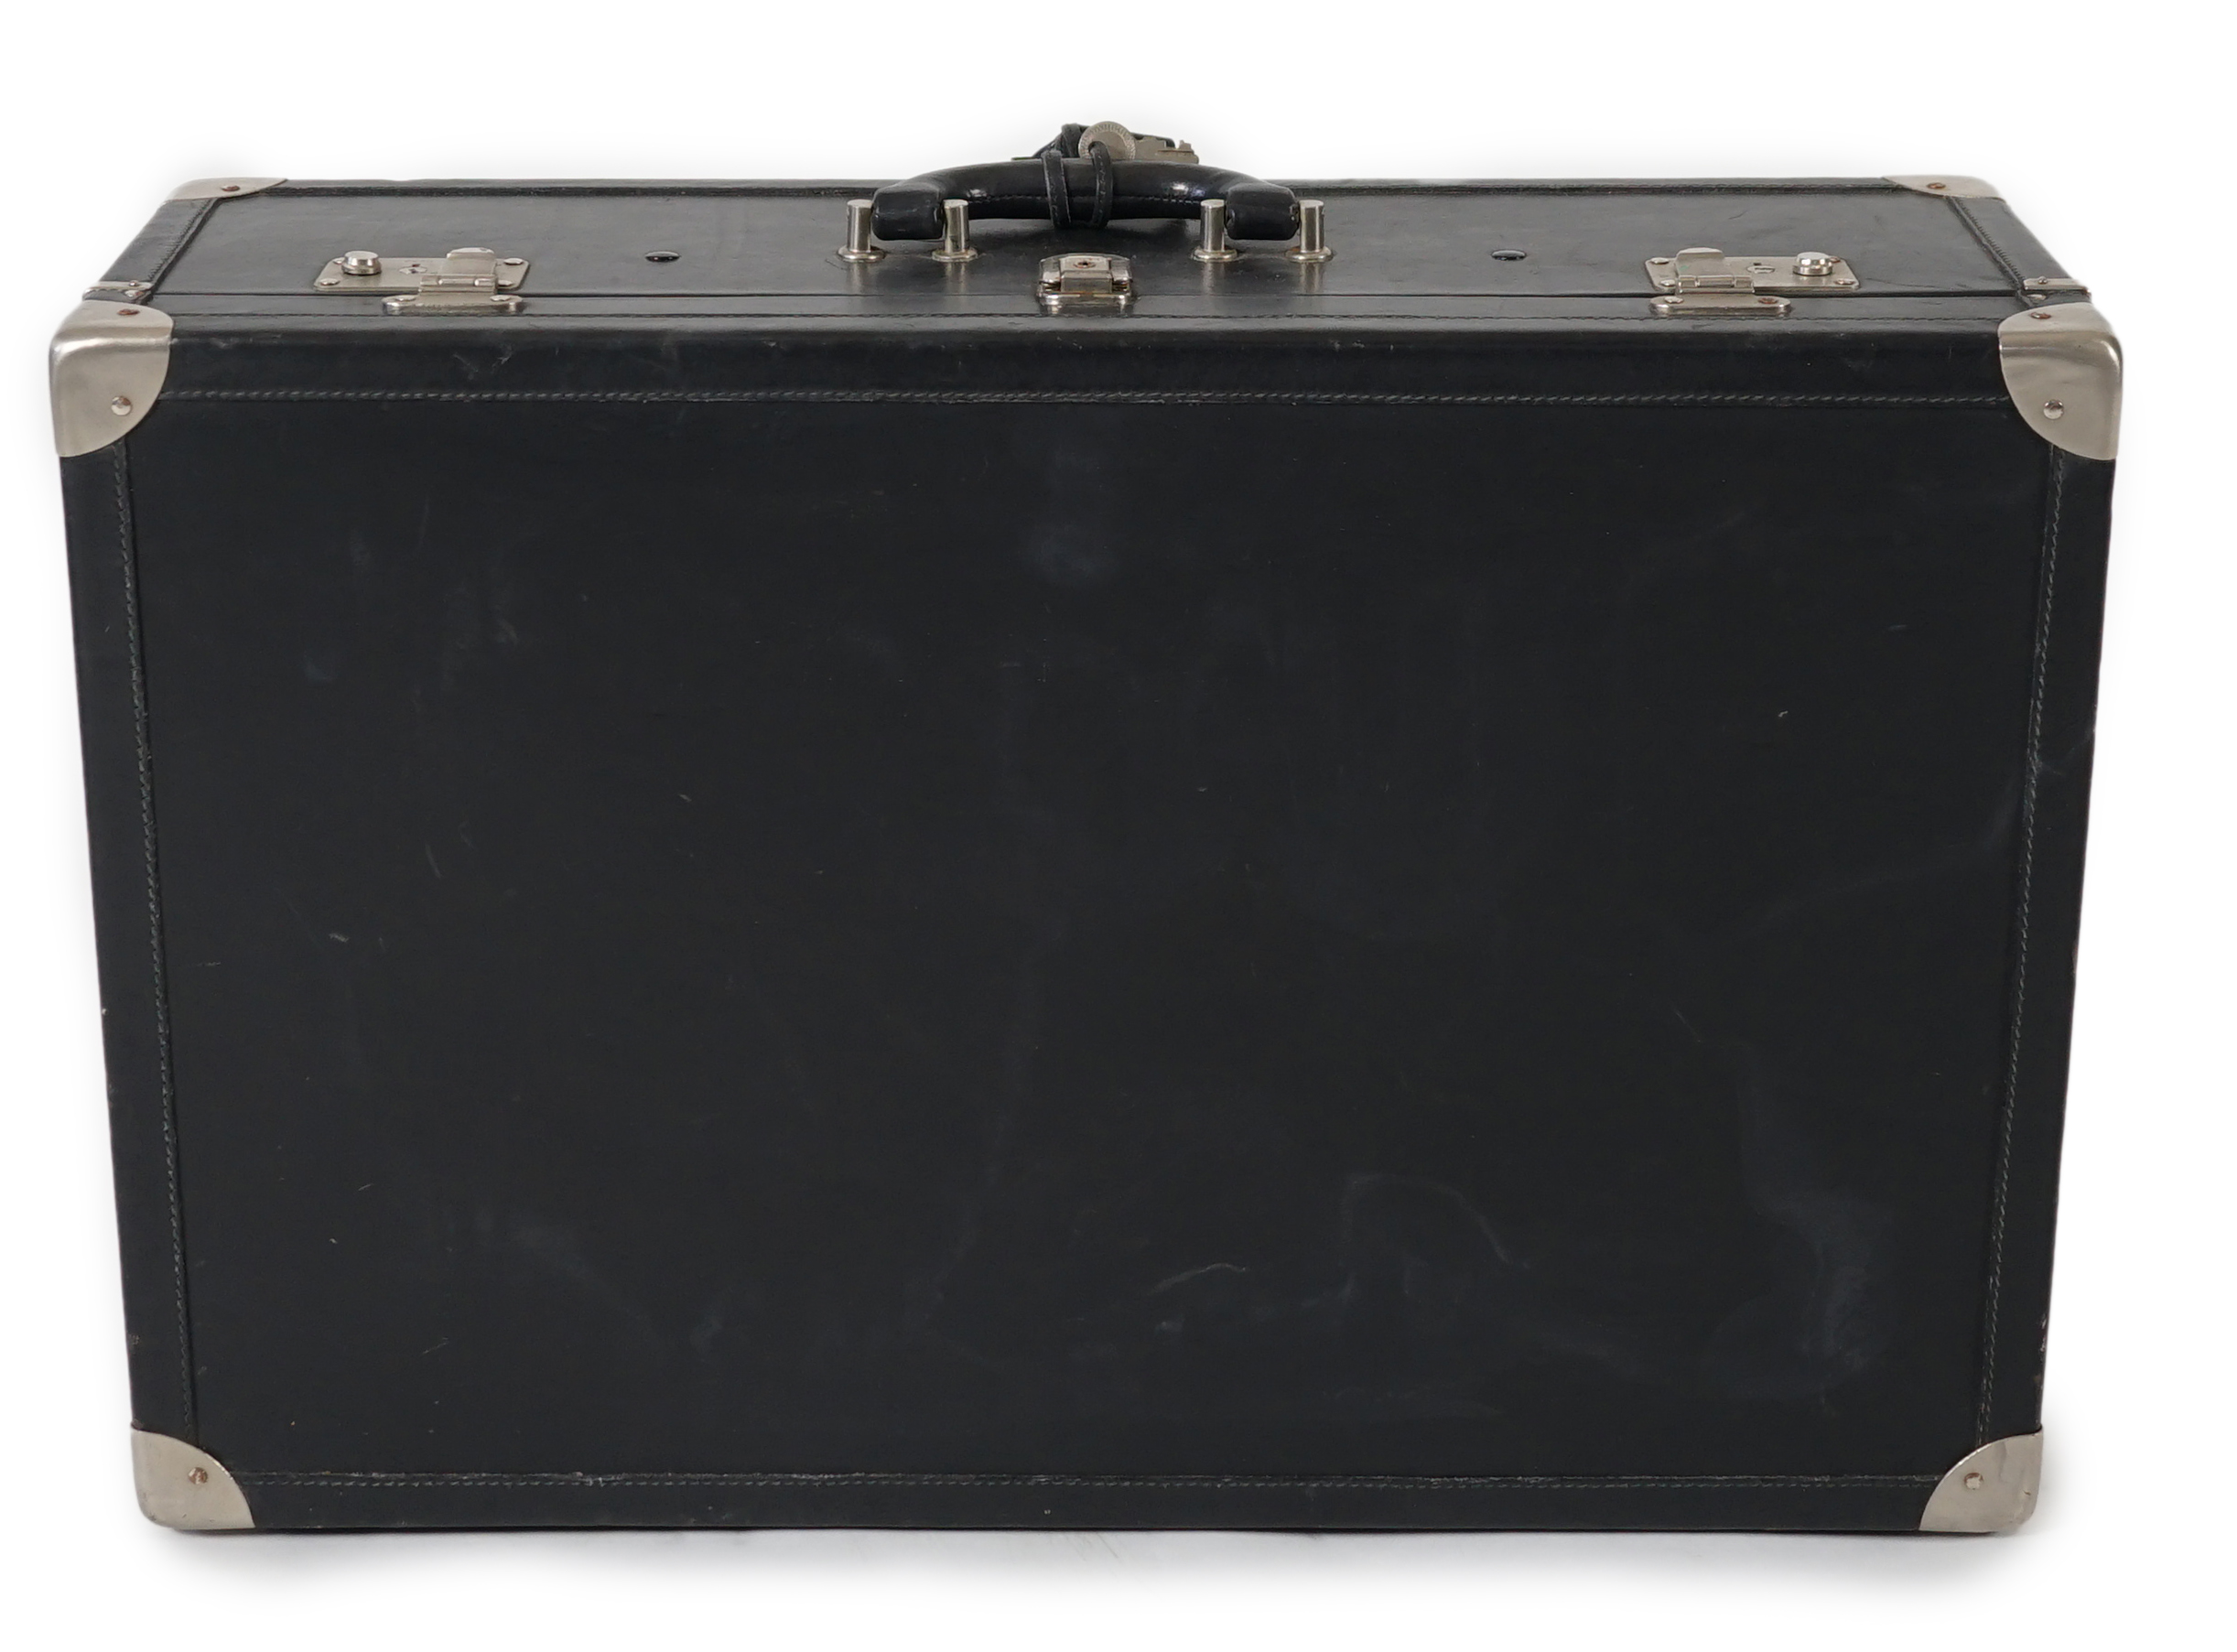 A Nina Cerruti black leather suitcase Length 64.5cm, depth 22cm, width 42cm